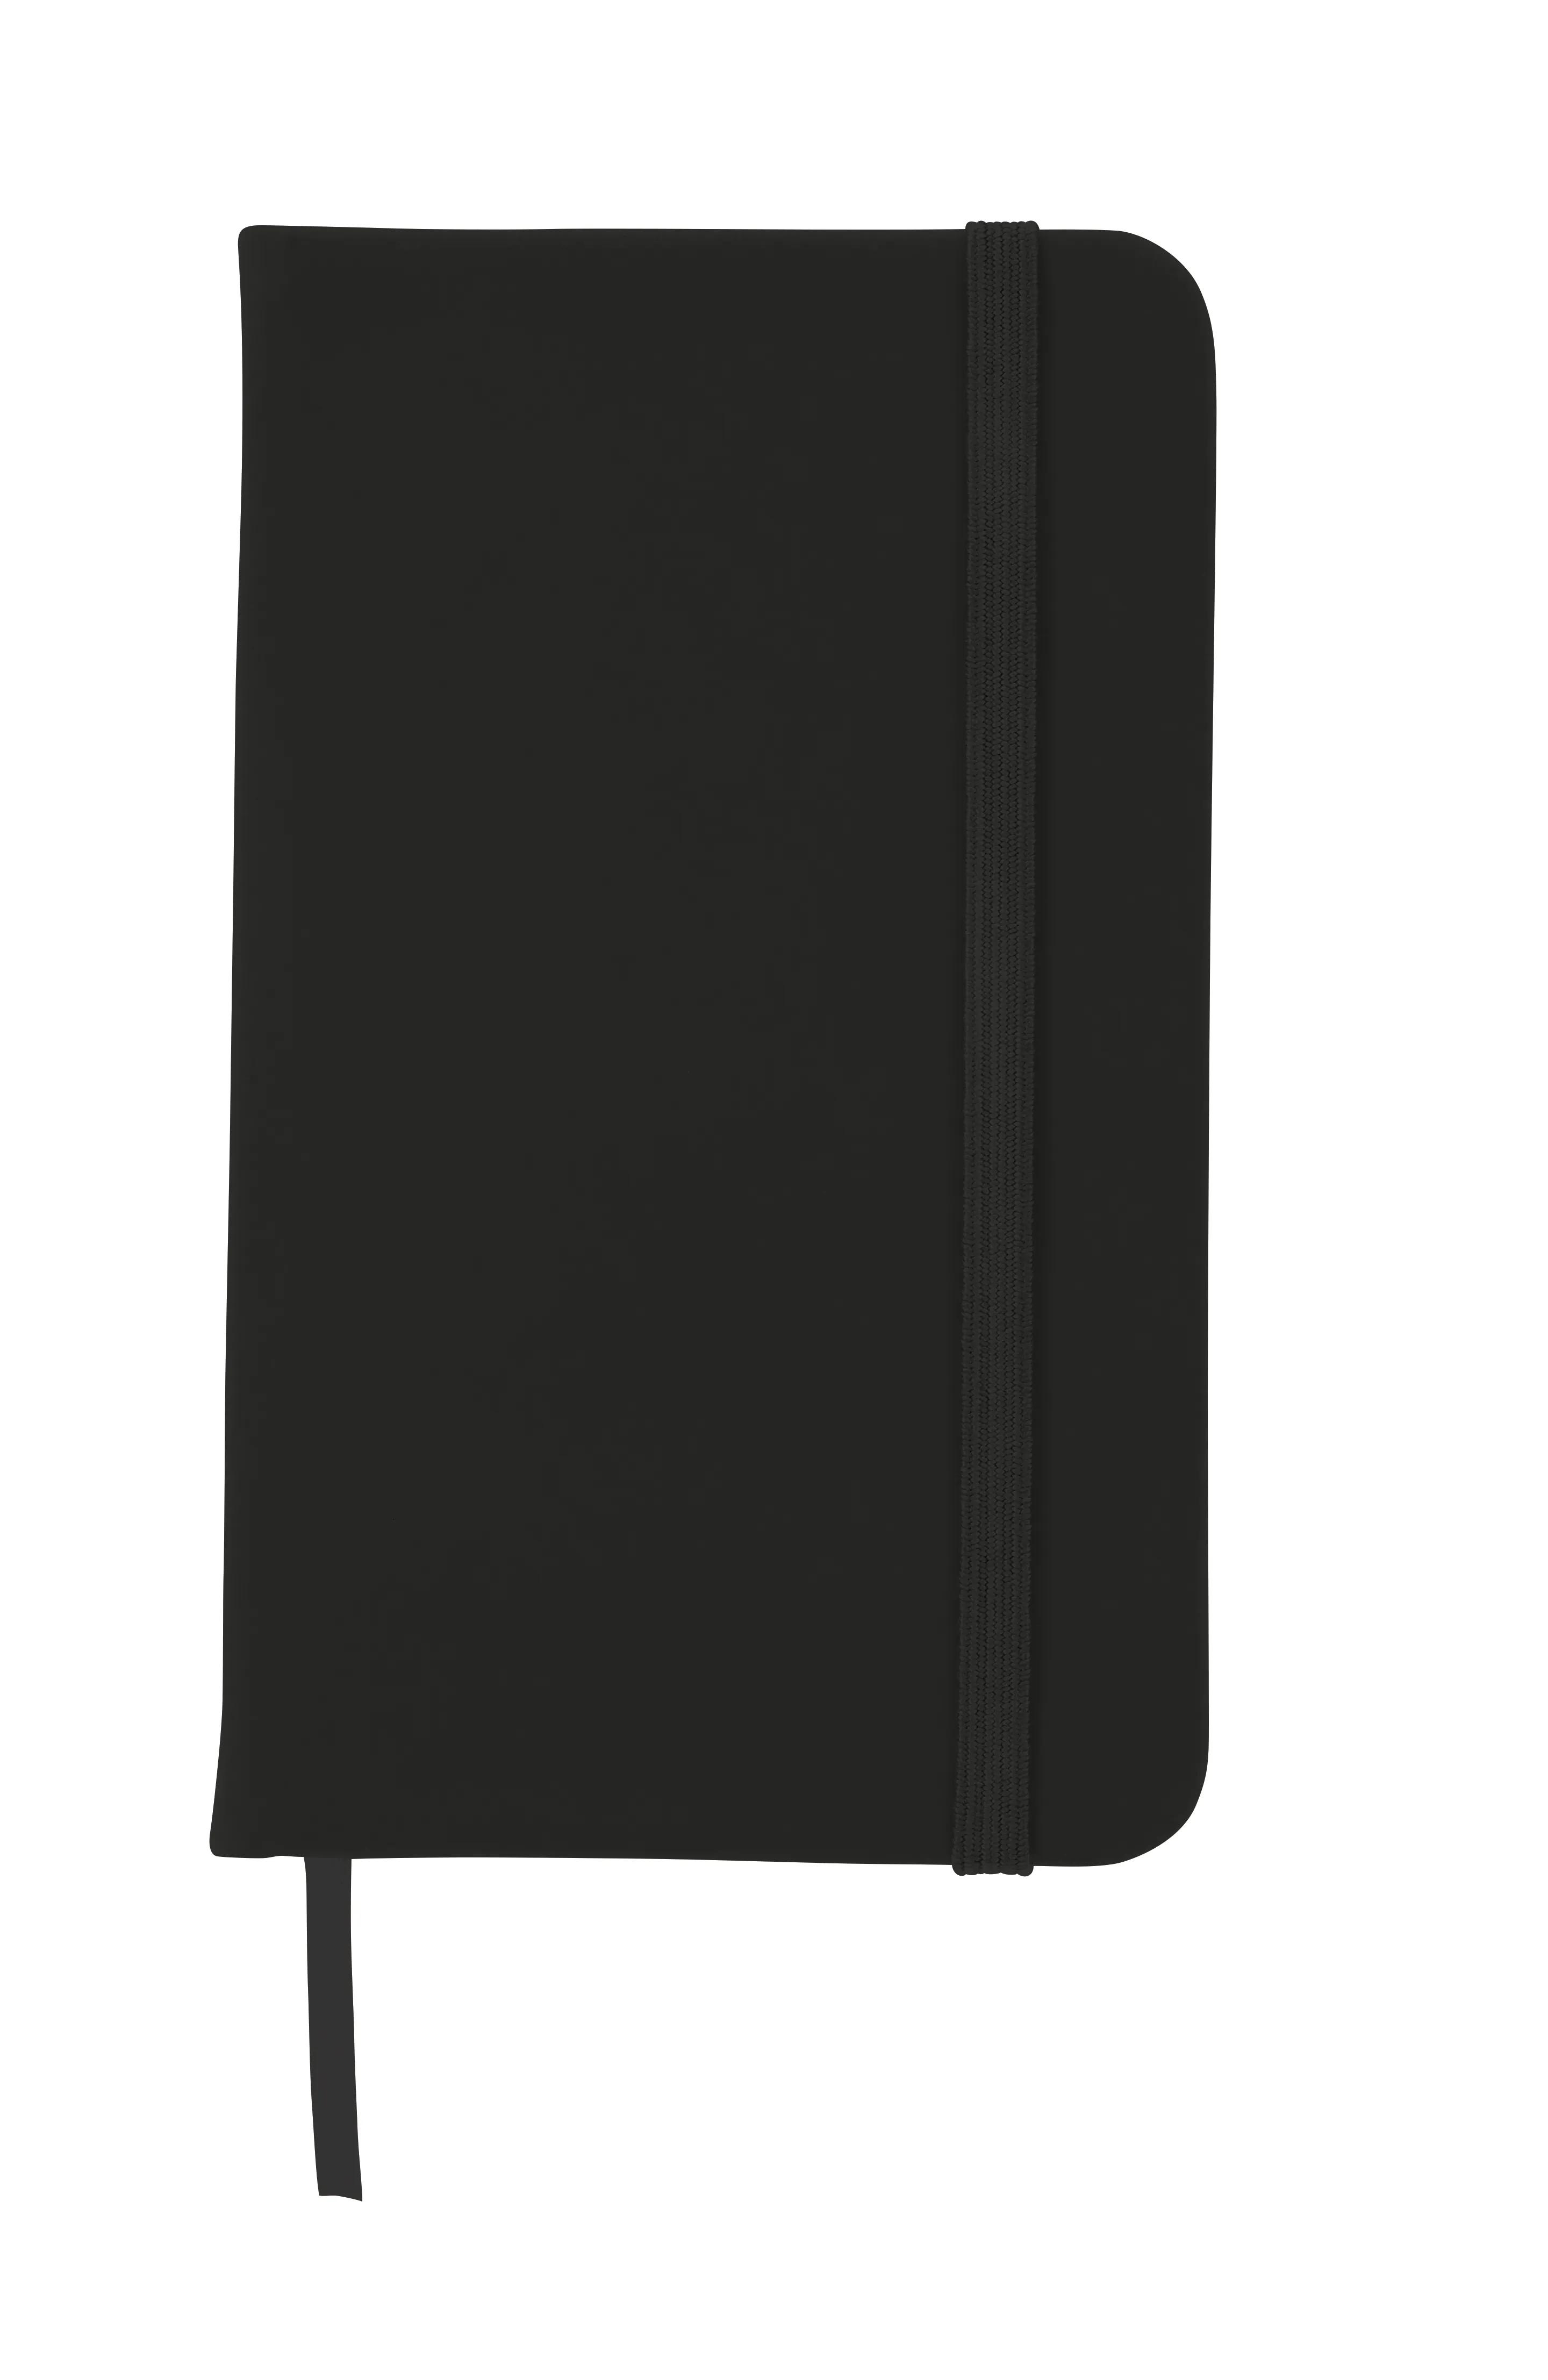 3” x 5” Journal Notebook 1 of 9